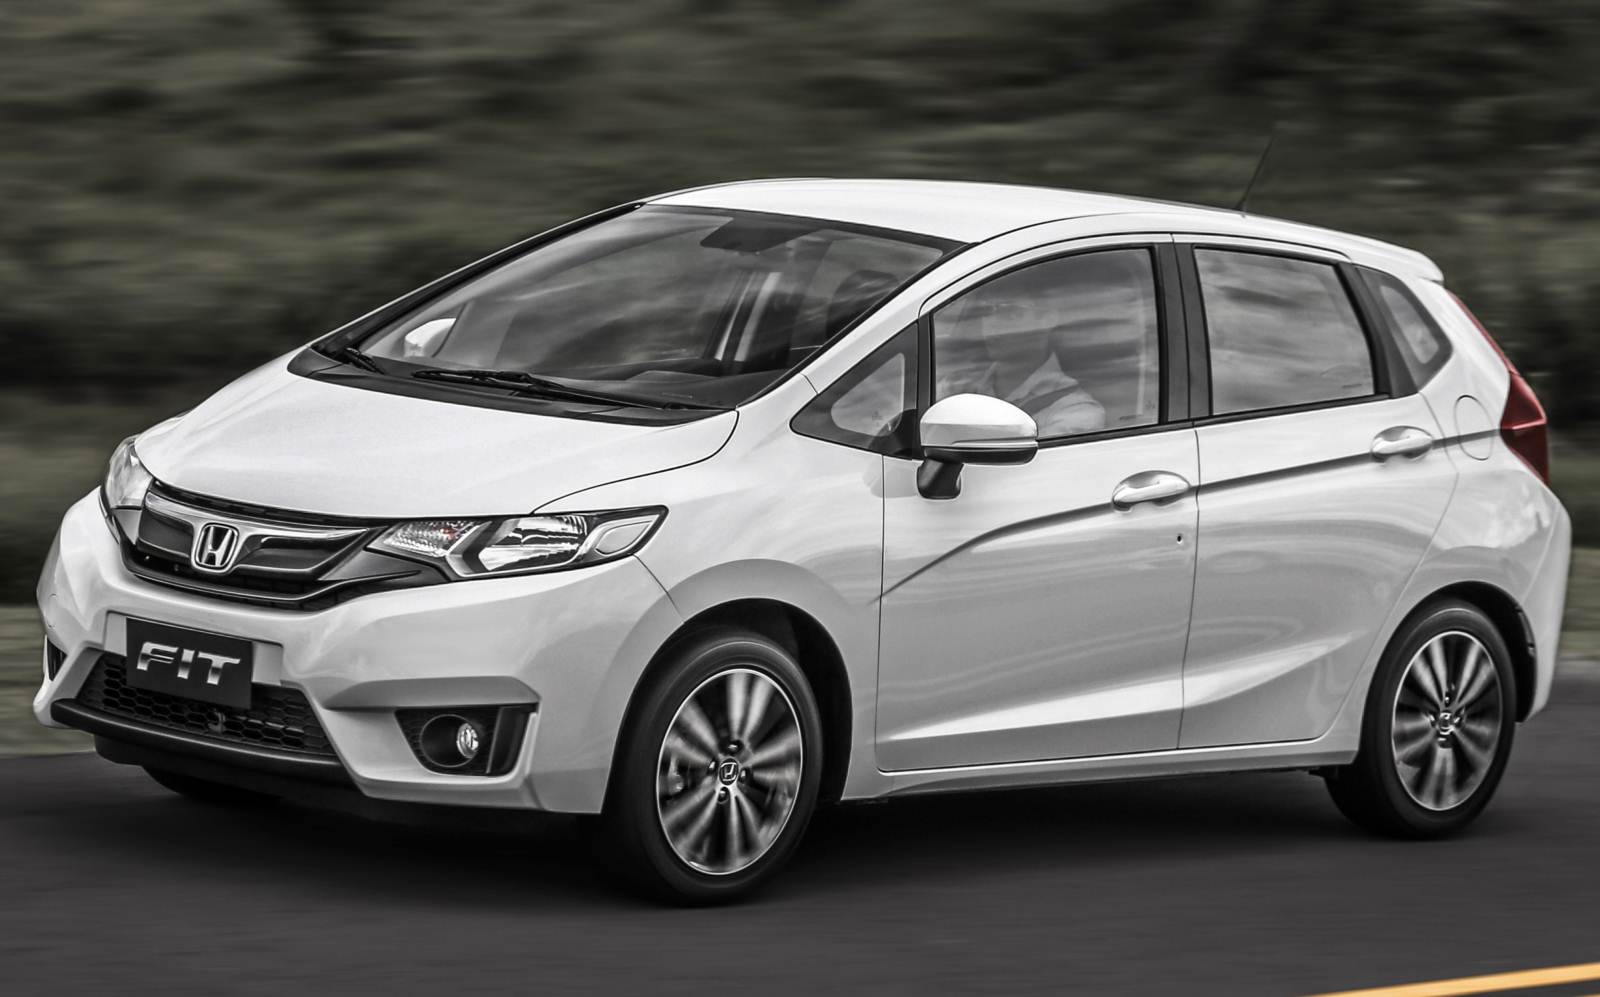 Novo Honda Fit 2015: fotos, desempenho e tabela de preços